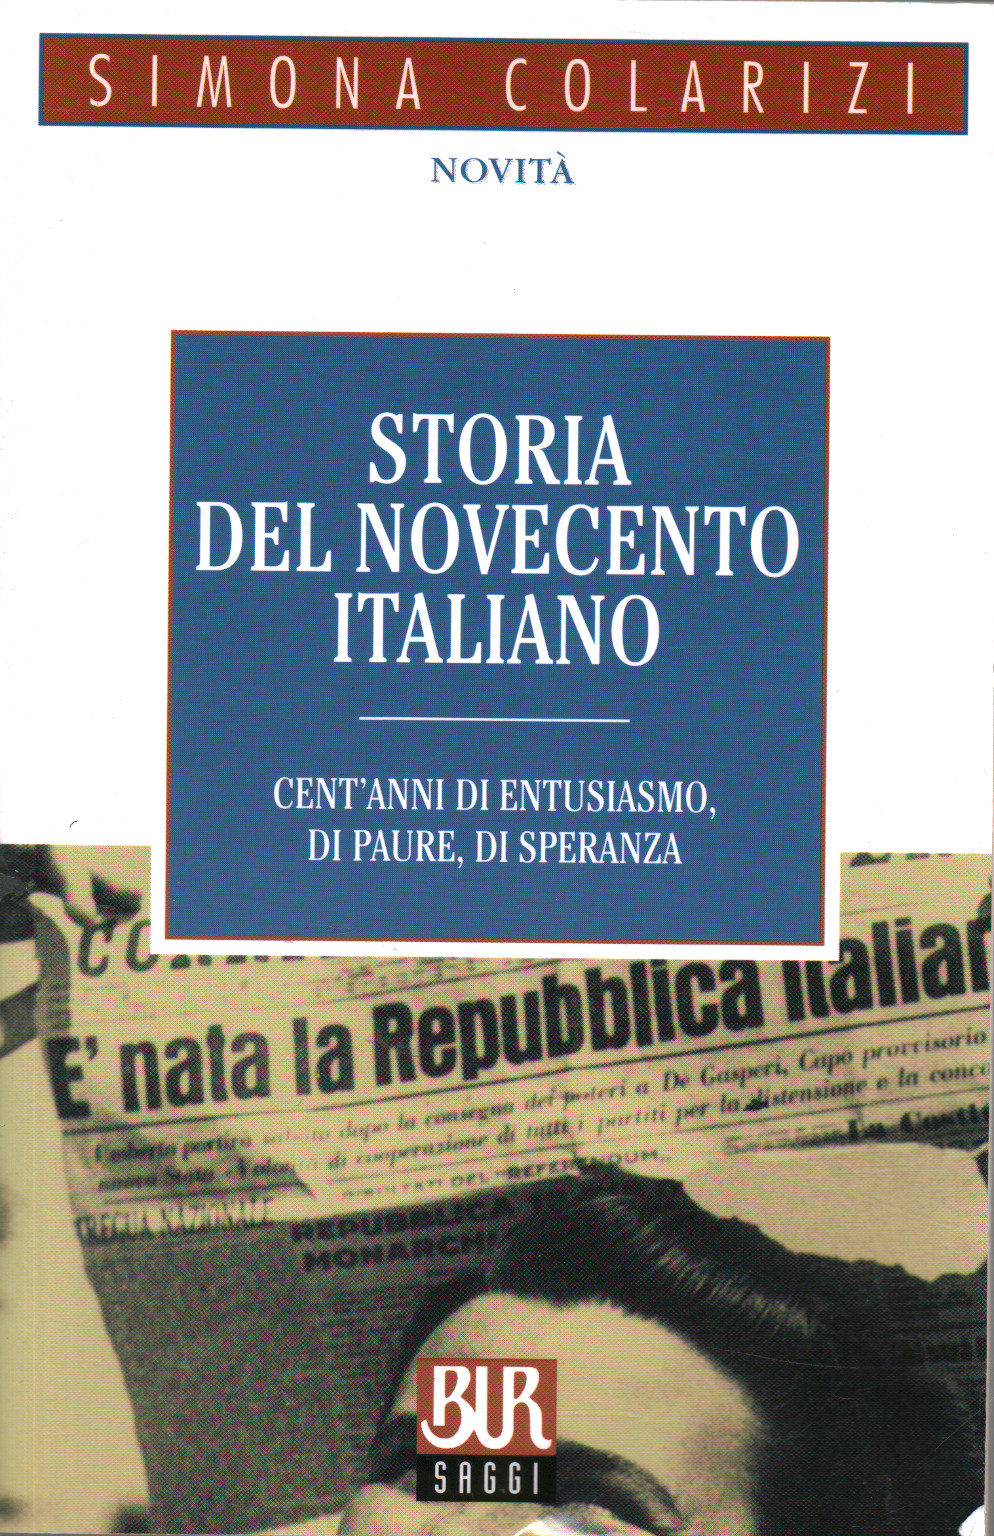 Storia del Novecento italiano, Simona Colarizi